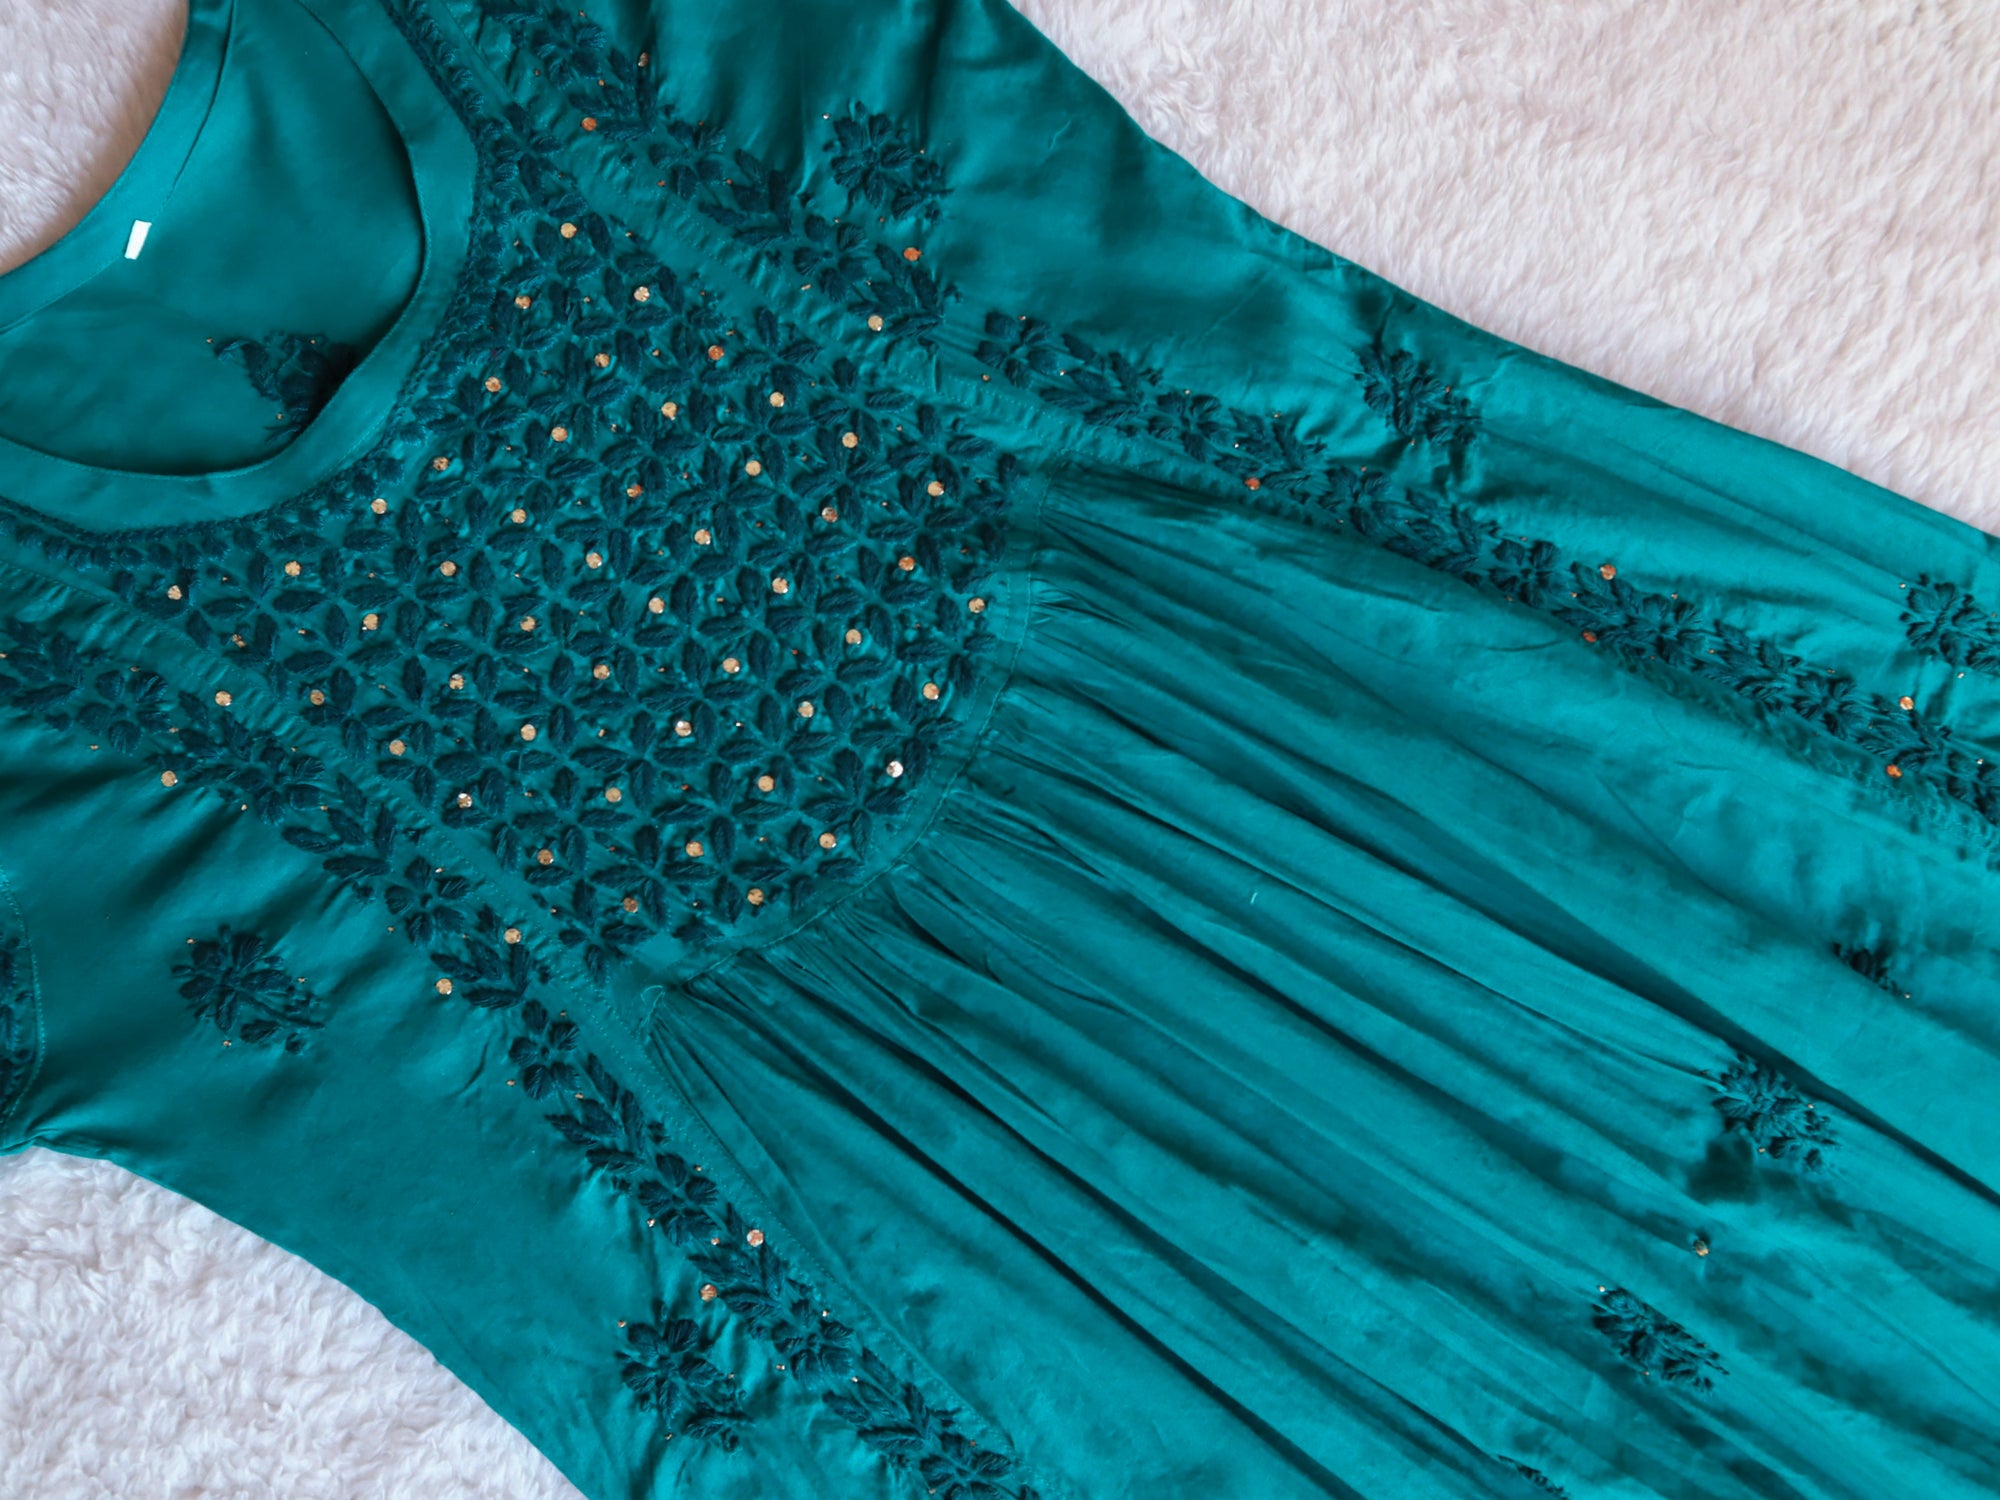 Nazakat Teal Blue Mukaish Dress